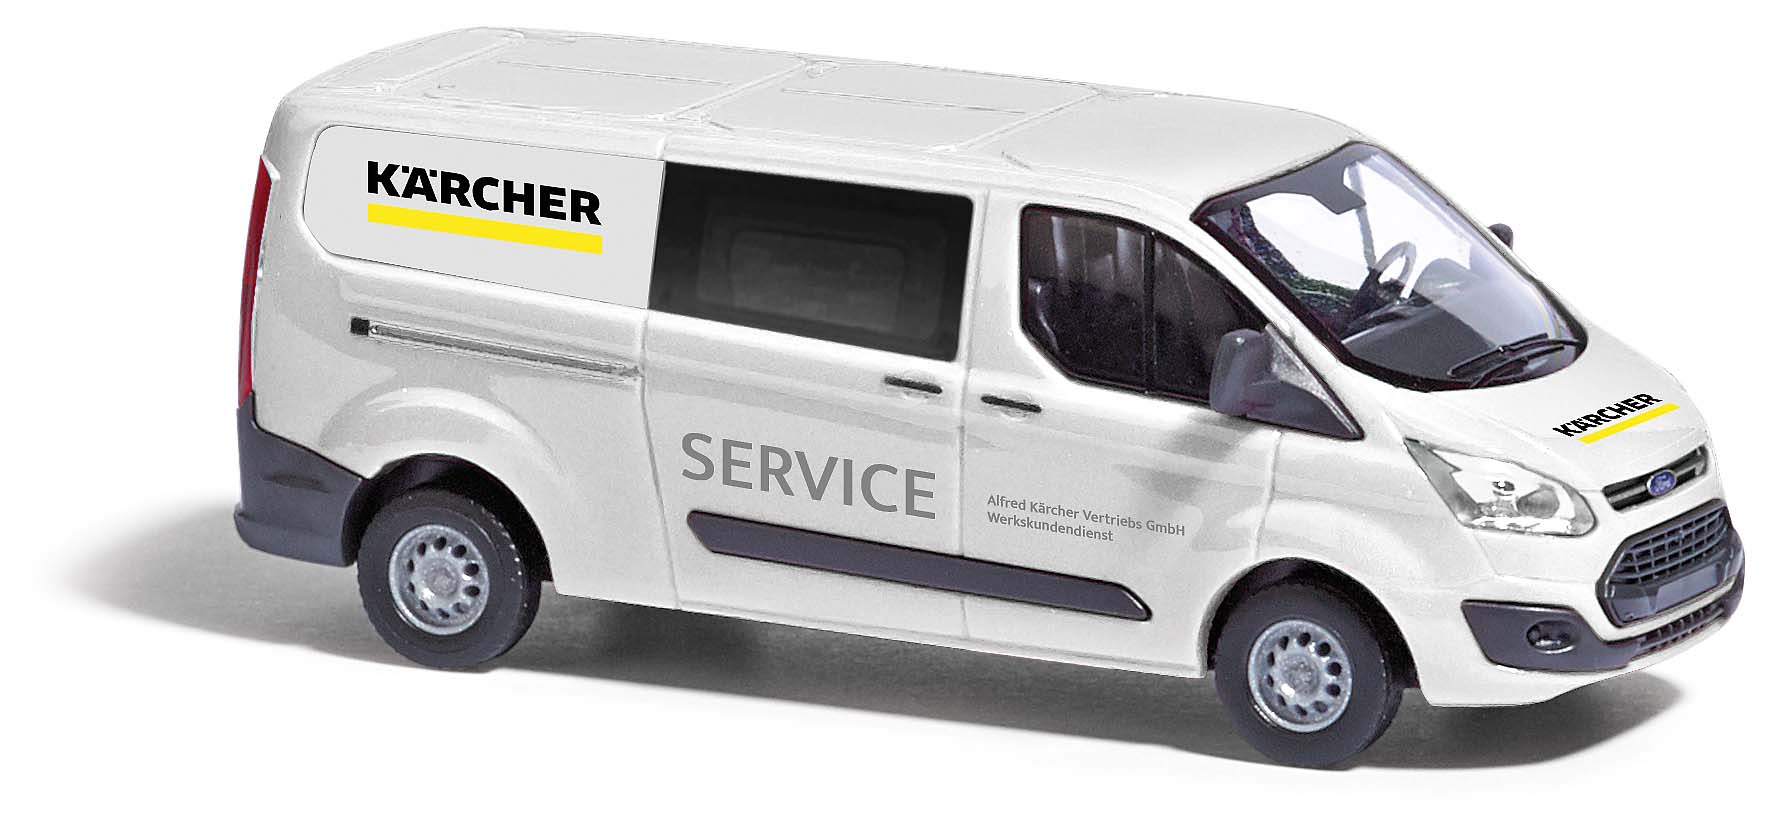 Ford Transit custom Kärcher Kärcher Service Baujahr 2012